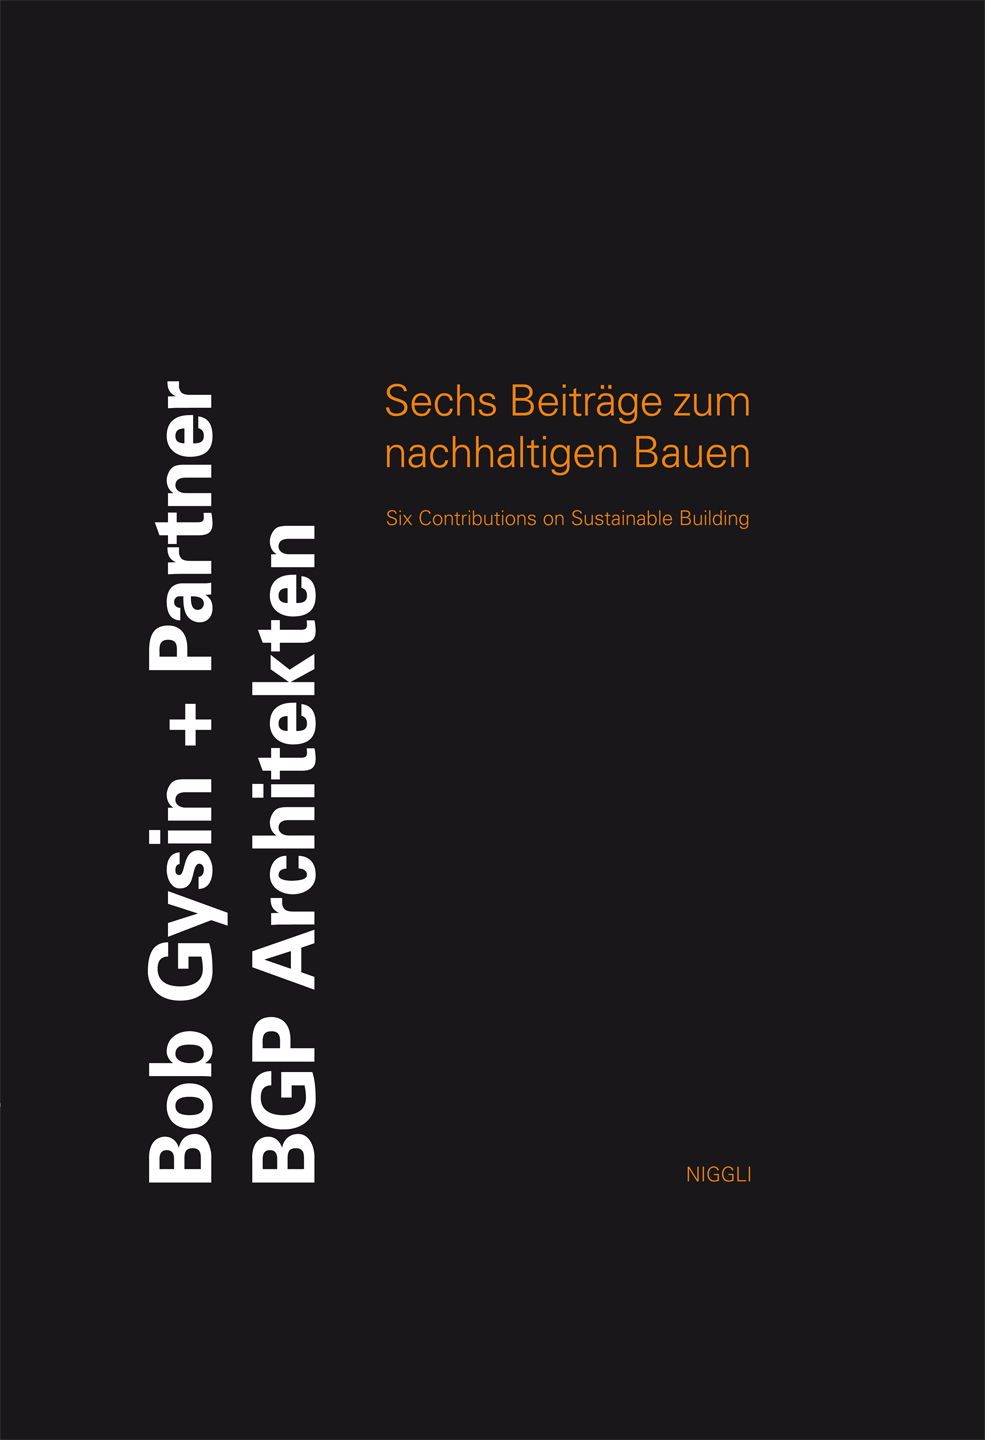 BGP_Sechs_Beitraege_zum_nachhaltigen_Bauen.jpg